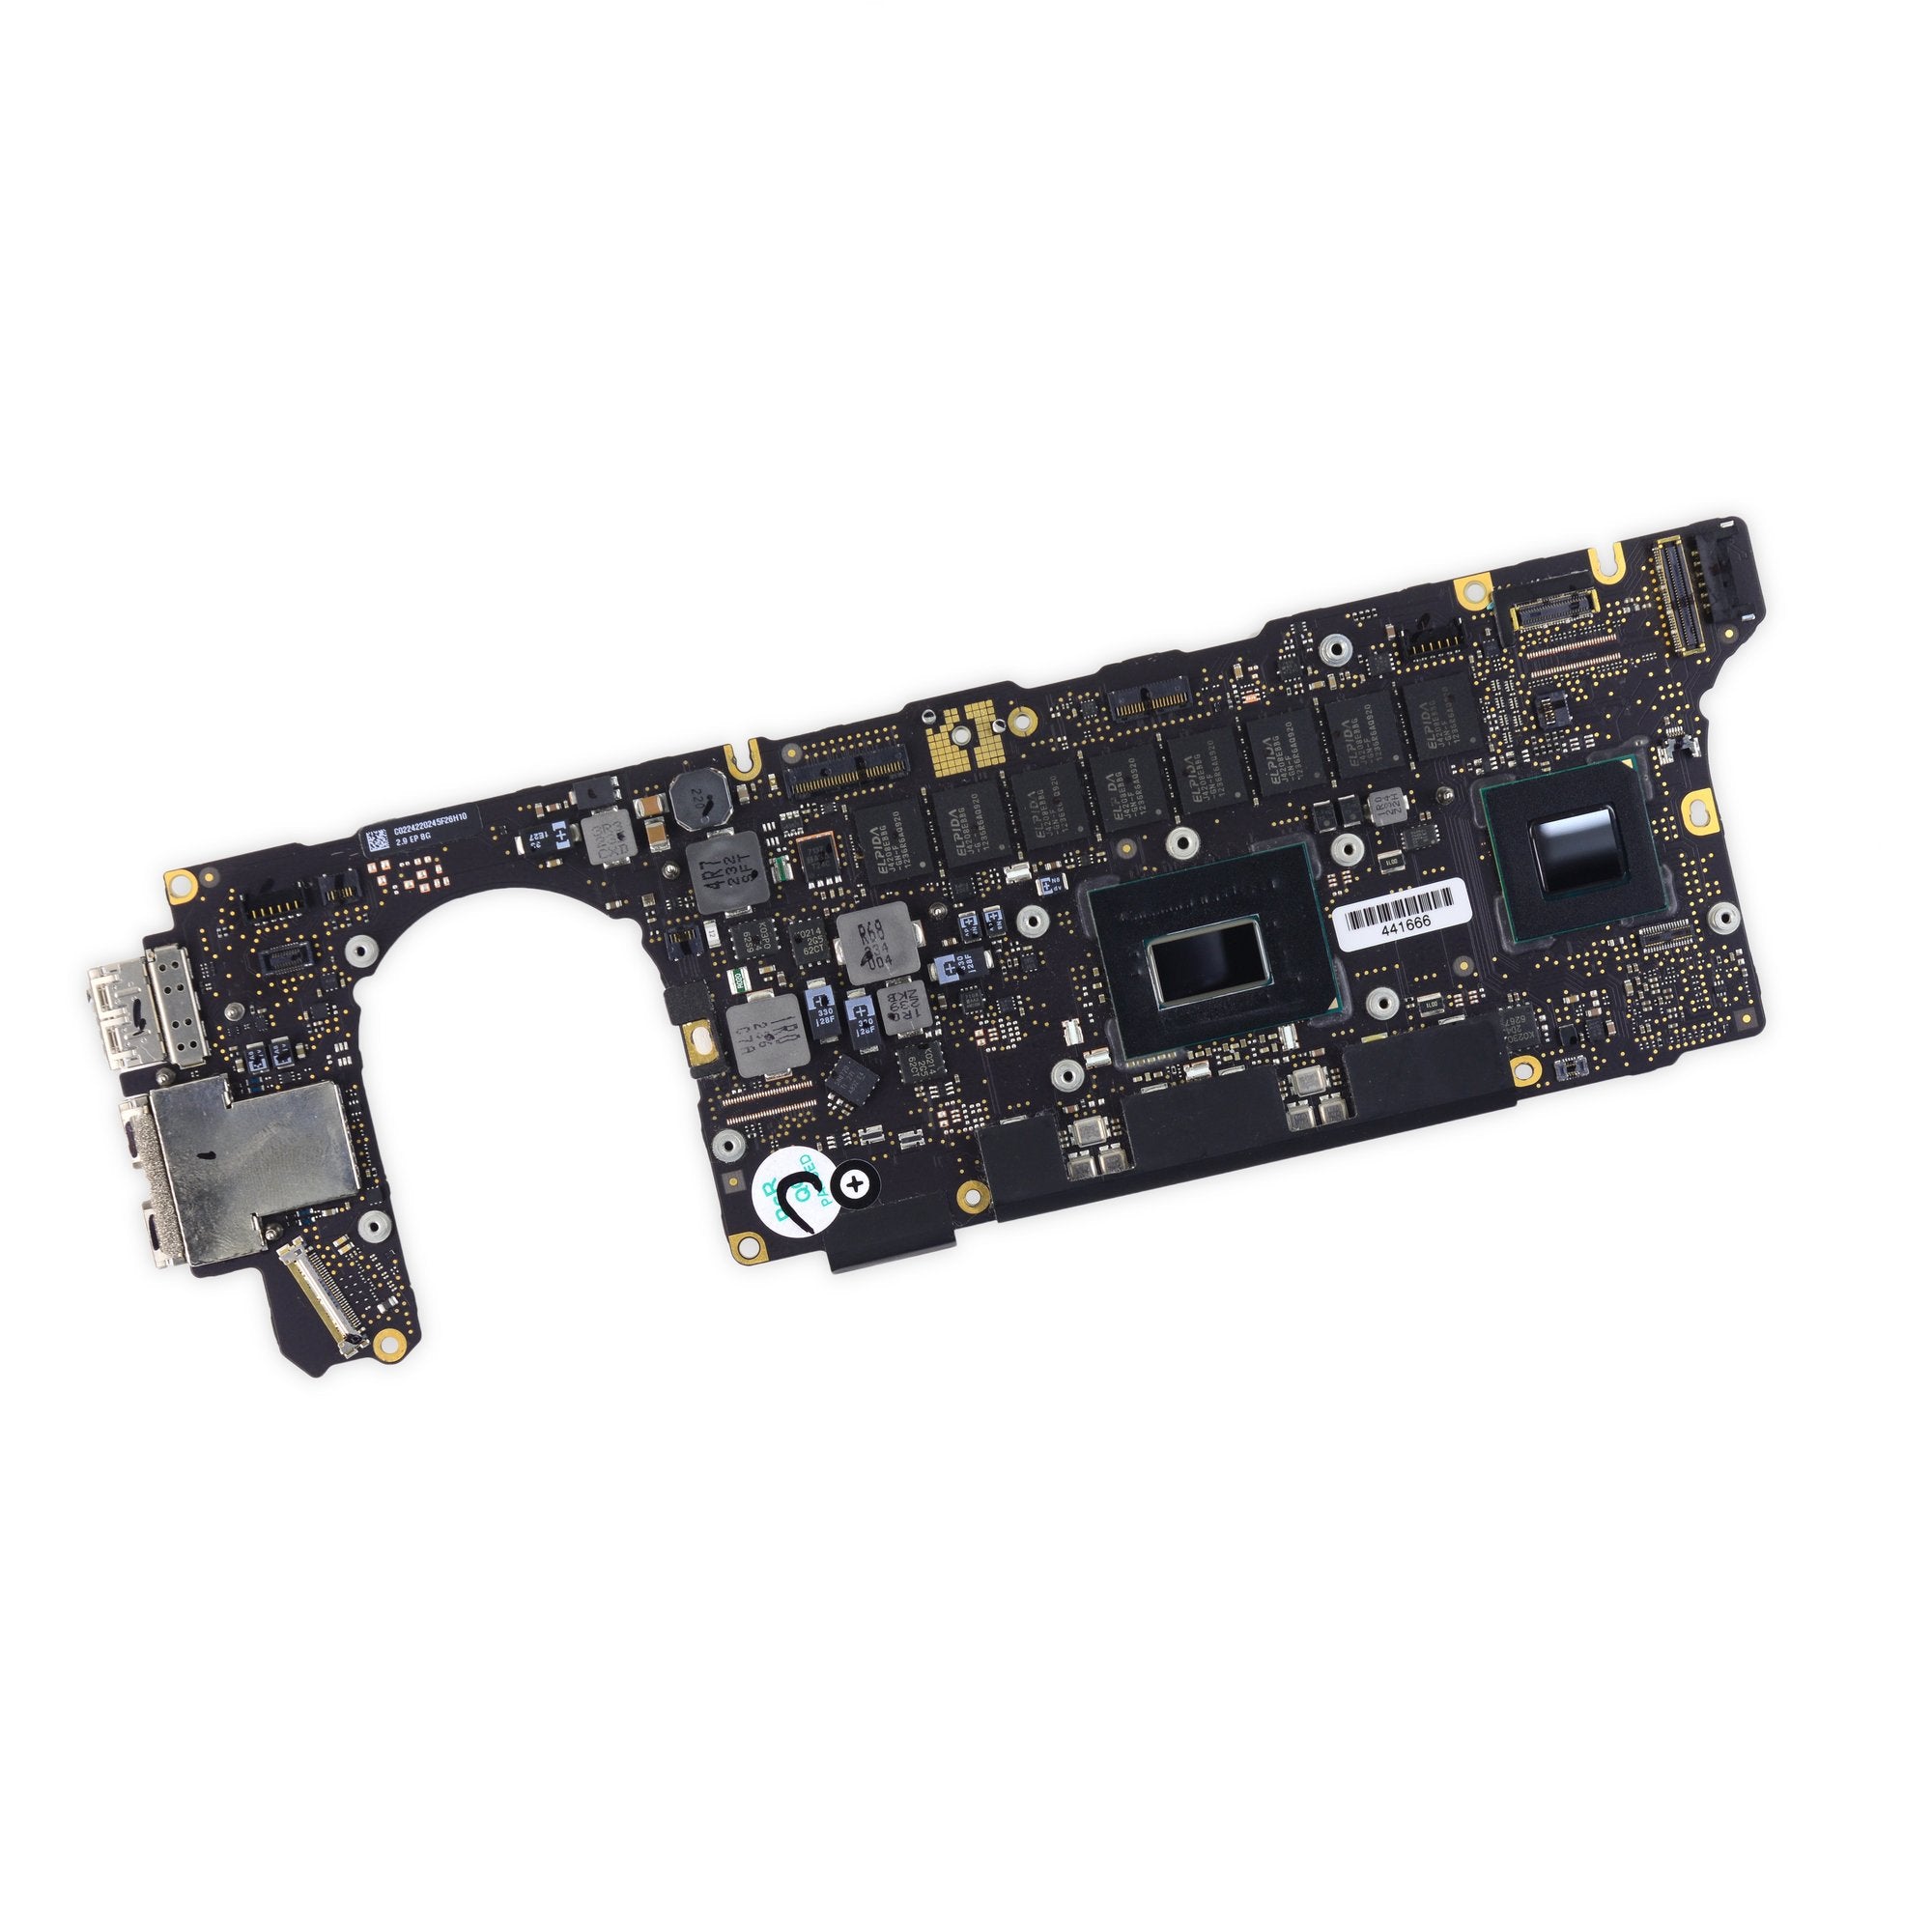 MacBook Pro 13" Retina (Late 2012) 2.9 GHz Logic Board